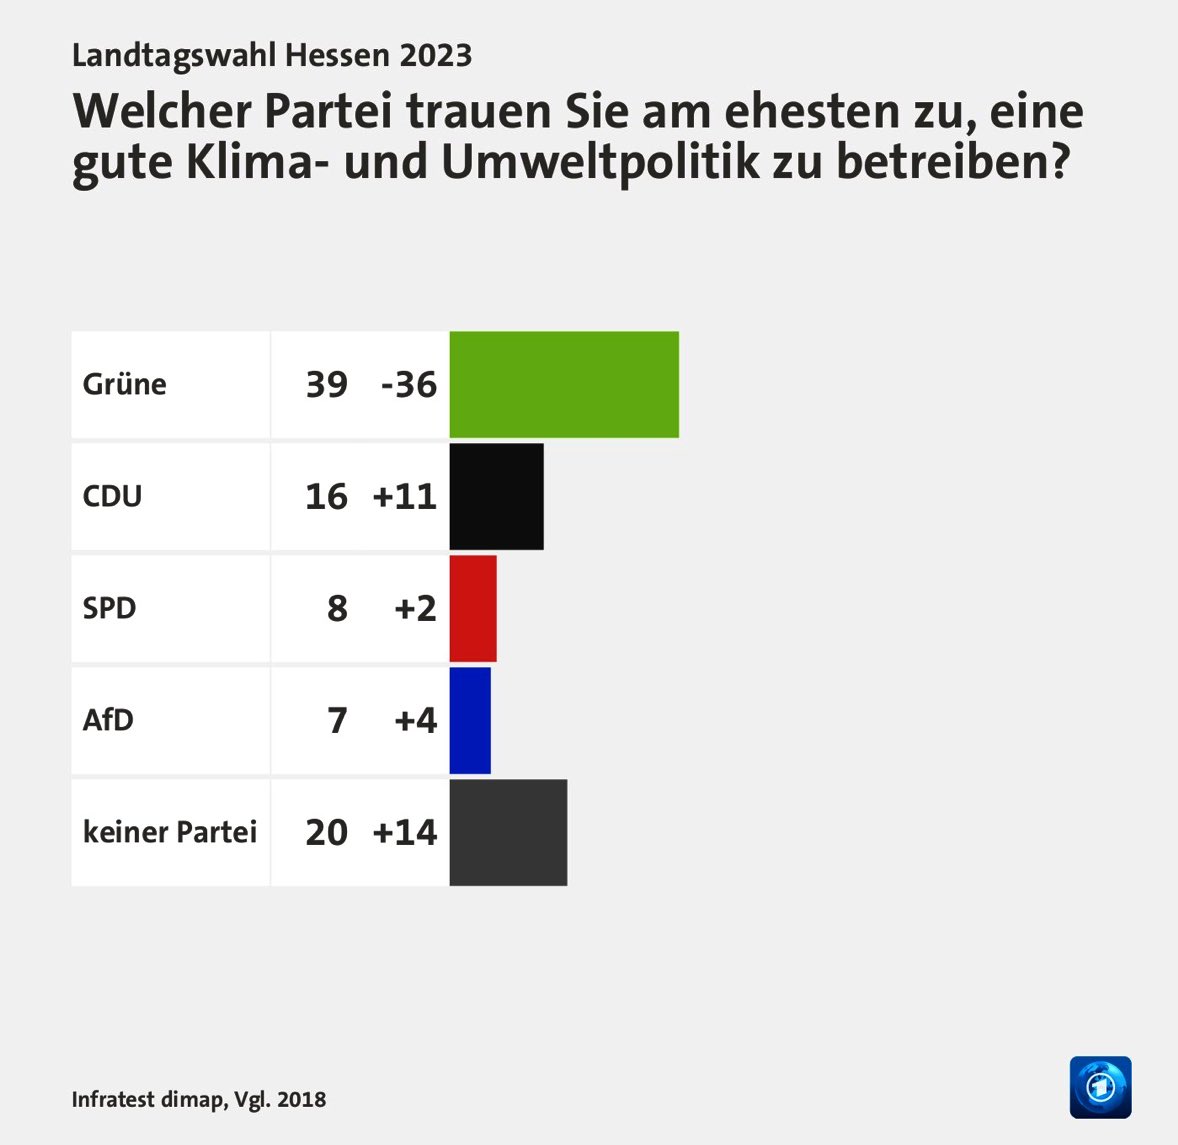 -36 Punkte im Basiskompetenzbereich der Grünen. Beachtlich. #Hessenwahl2023